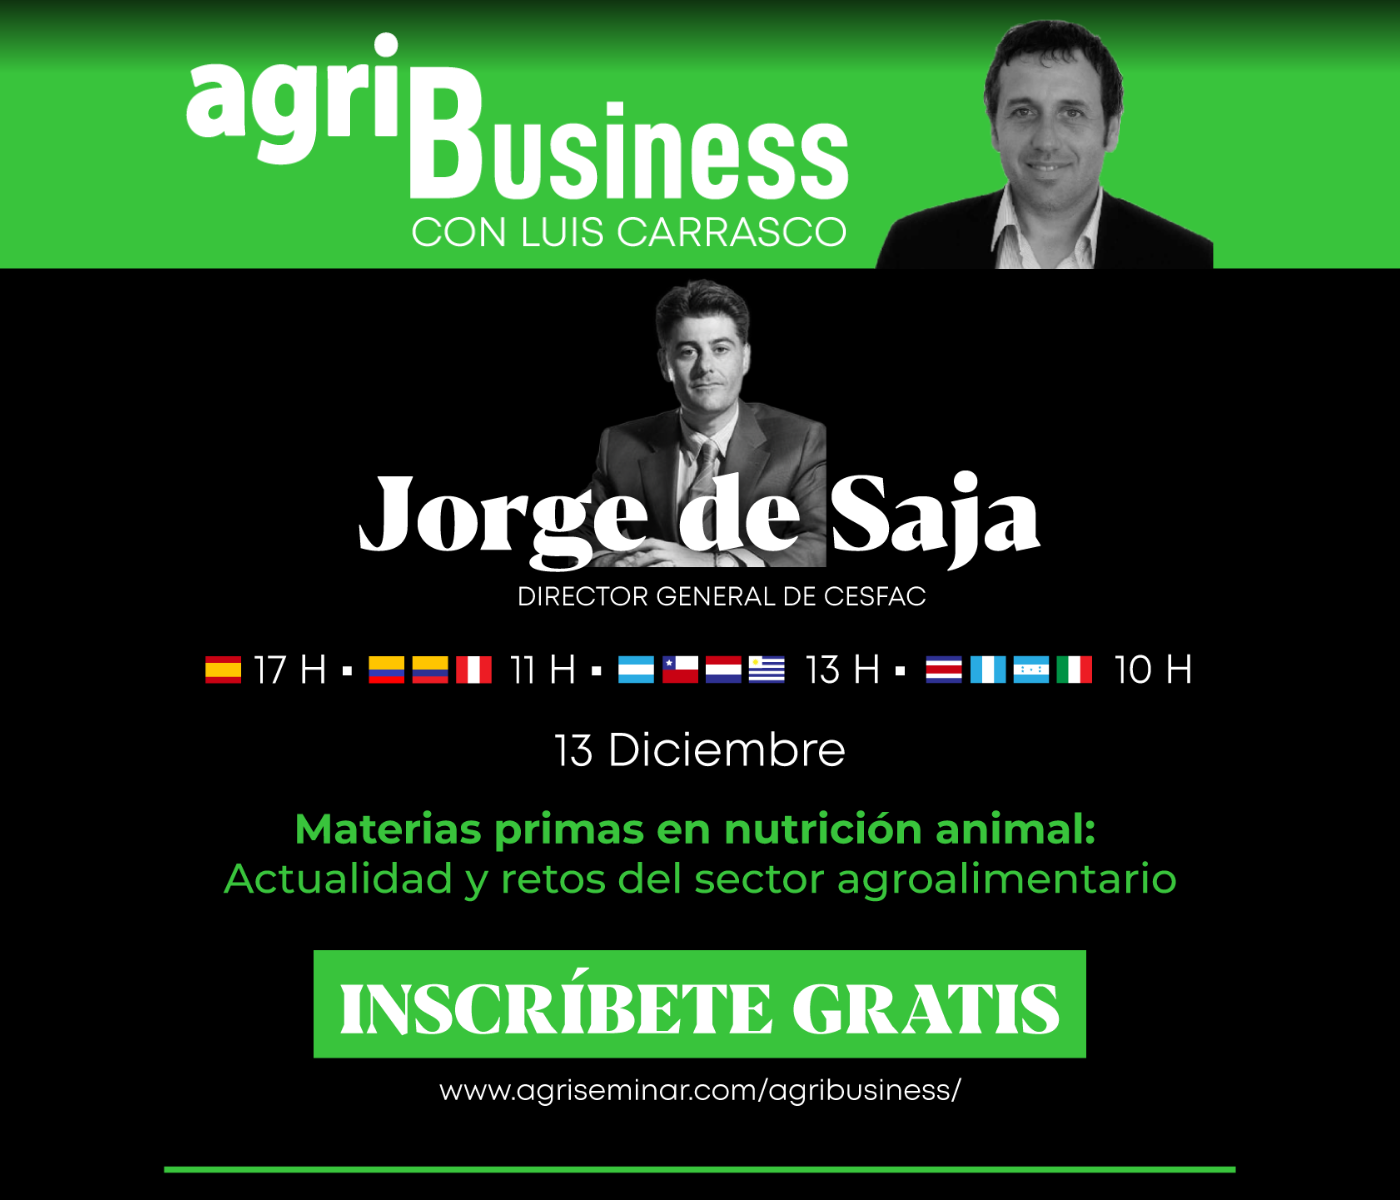 agriBusiness con Luis Carrasco – Las entrevistas a los líderes del sector agropecuario